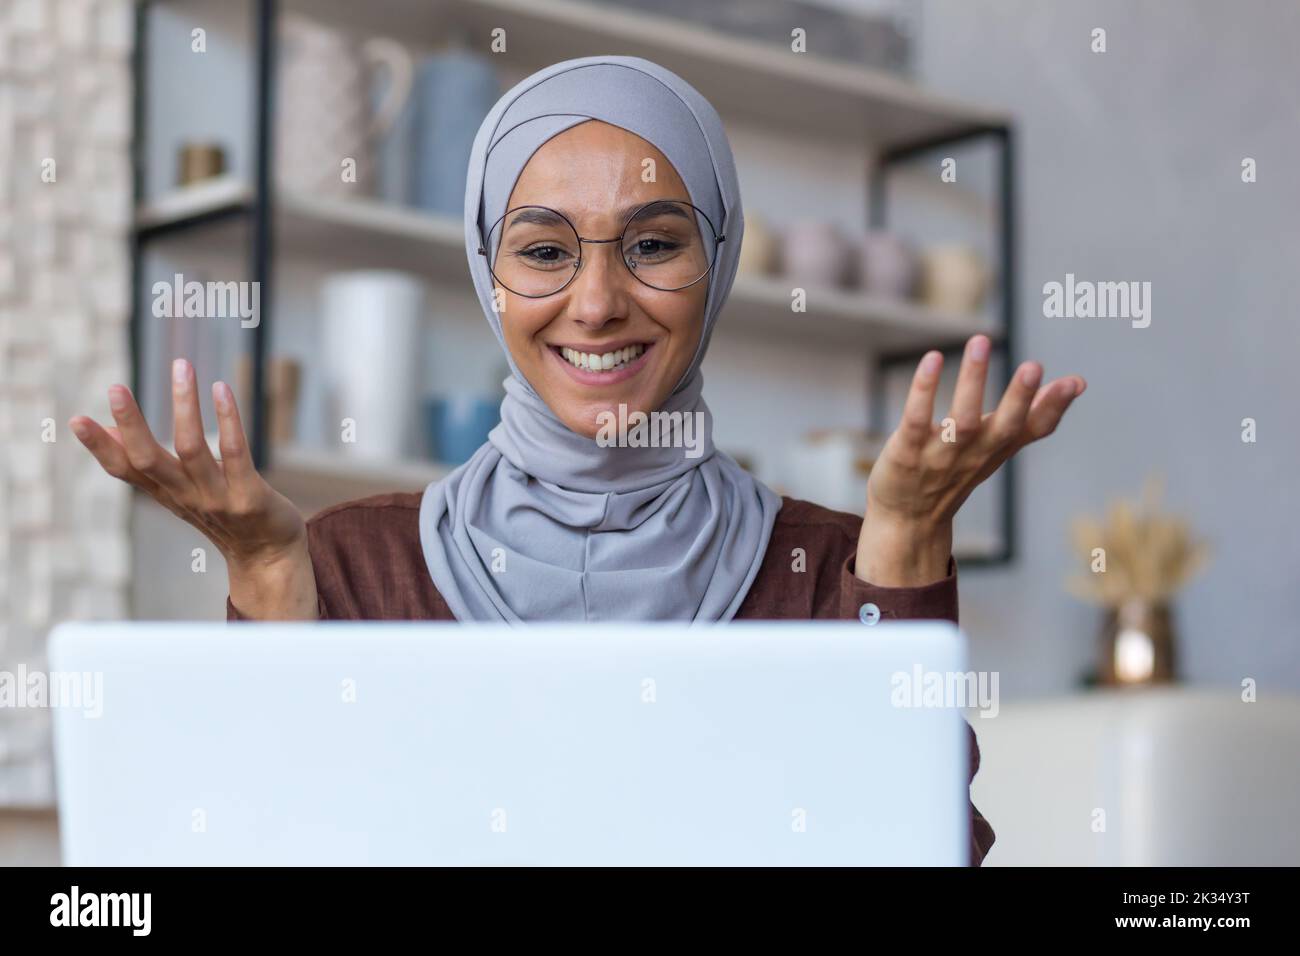 Videochiama online incontro con amici, giovane bella donna musulmana in hijab guardando la fotocamera e sorridendo parlando con gli amici a distanza, donna a casa in cucina utilizzando un computer portatile. Foto Stock